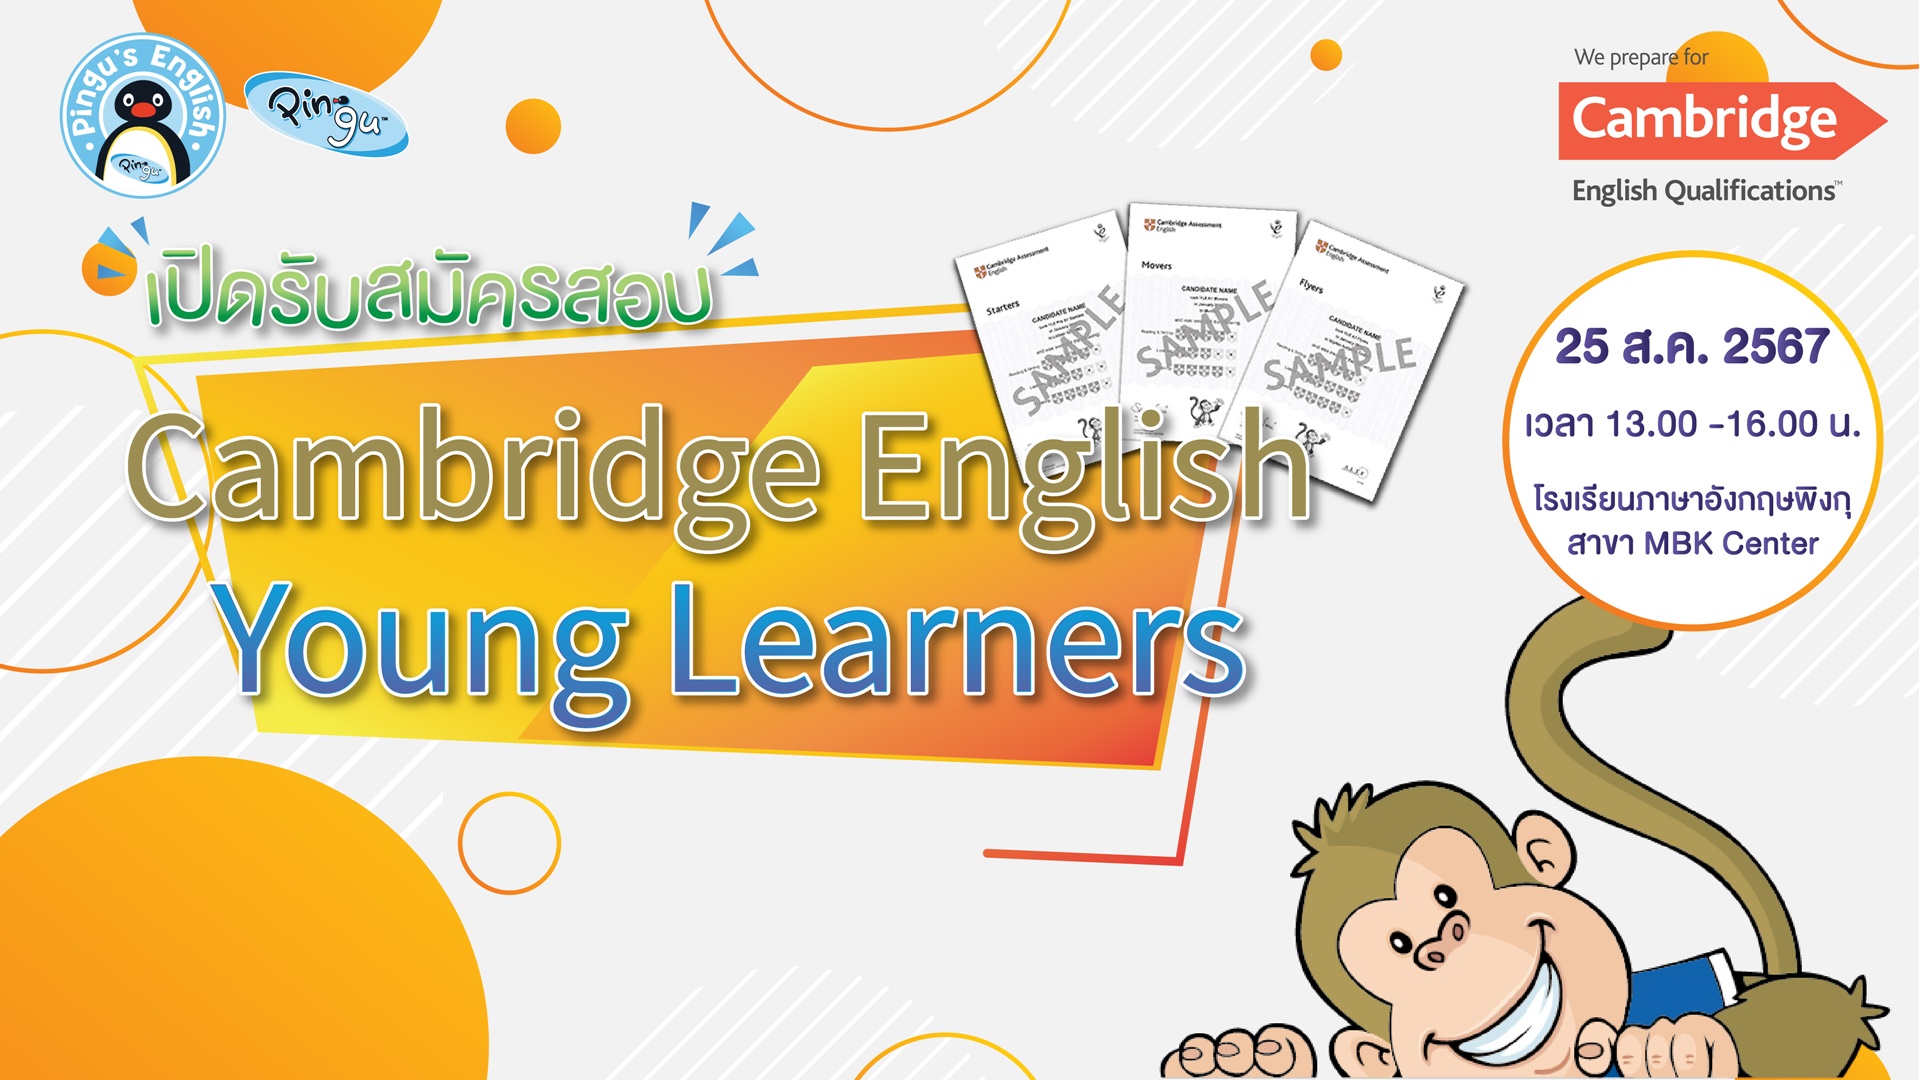 ข่าวการศึกษา - การทดสอบภาษาอังกฤษระดับสากล Cambridge English Young Learners สำหรับเด็ก